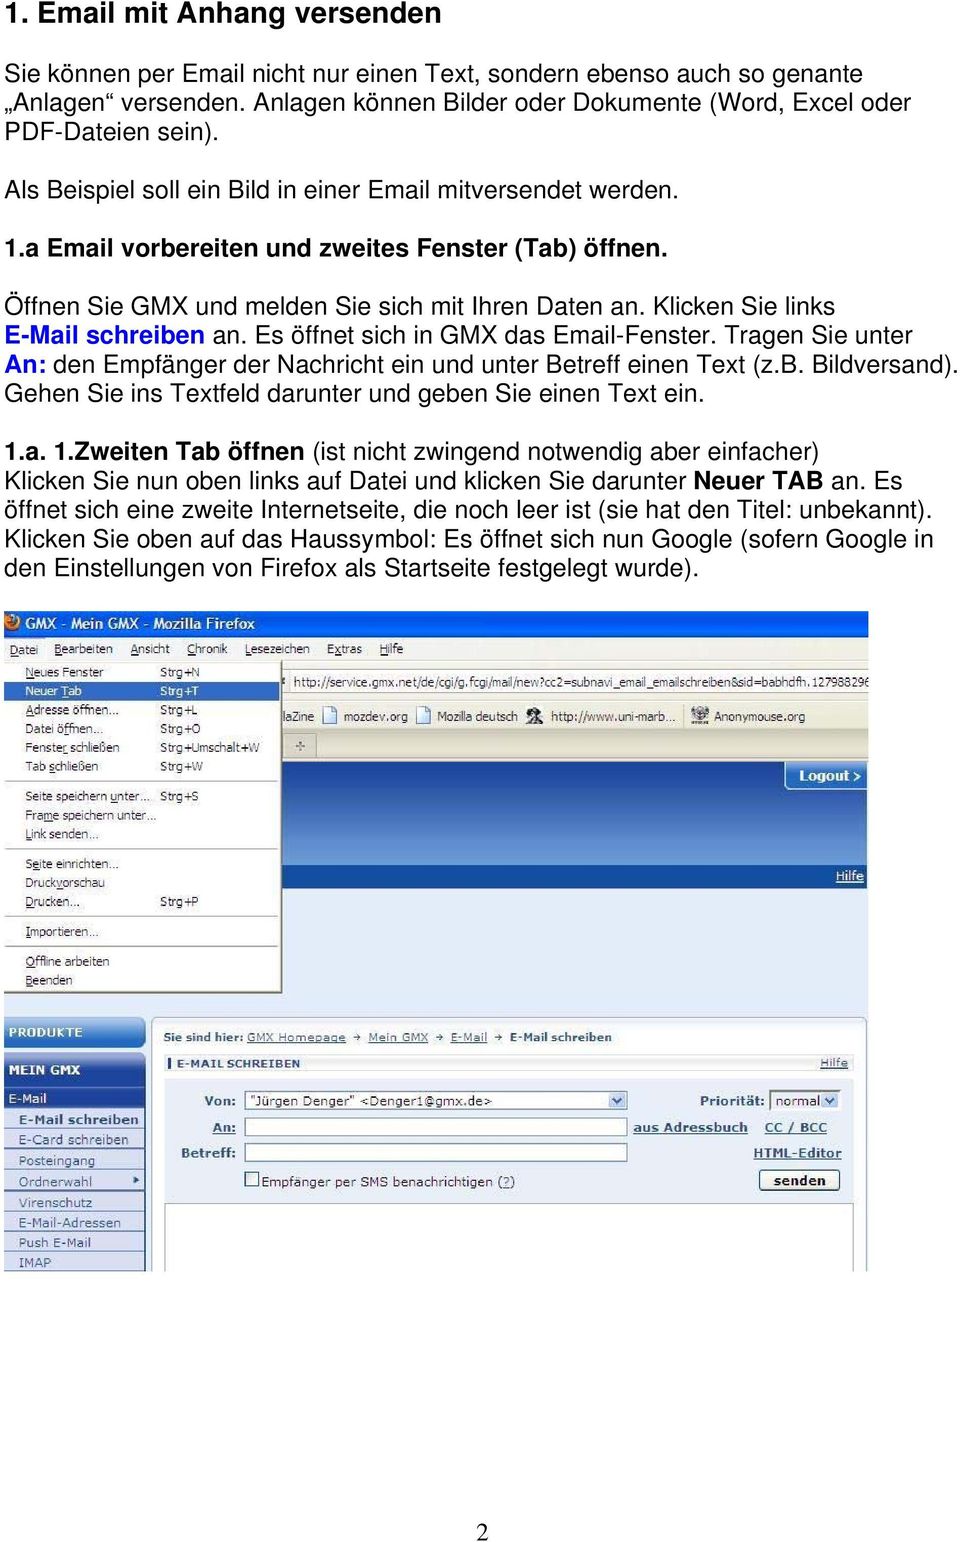 Klicken Sie links E-Mail schreiben an. Es öffnet sich in GMX das Email-Fenster. Tragen Sie unter An: den Empfänger der Nachricht ein und unter Betreff einen Text (z.b. Bildversand).